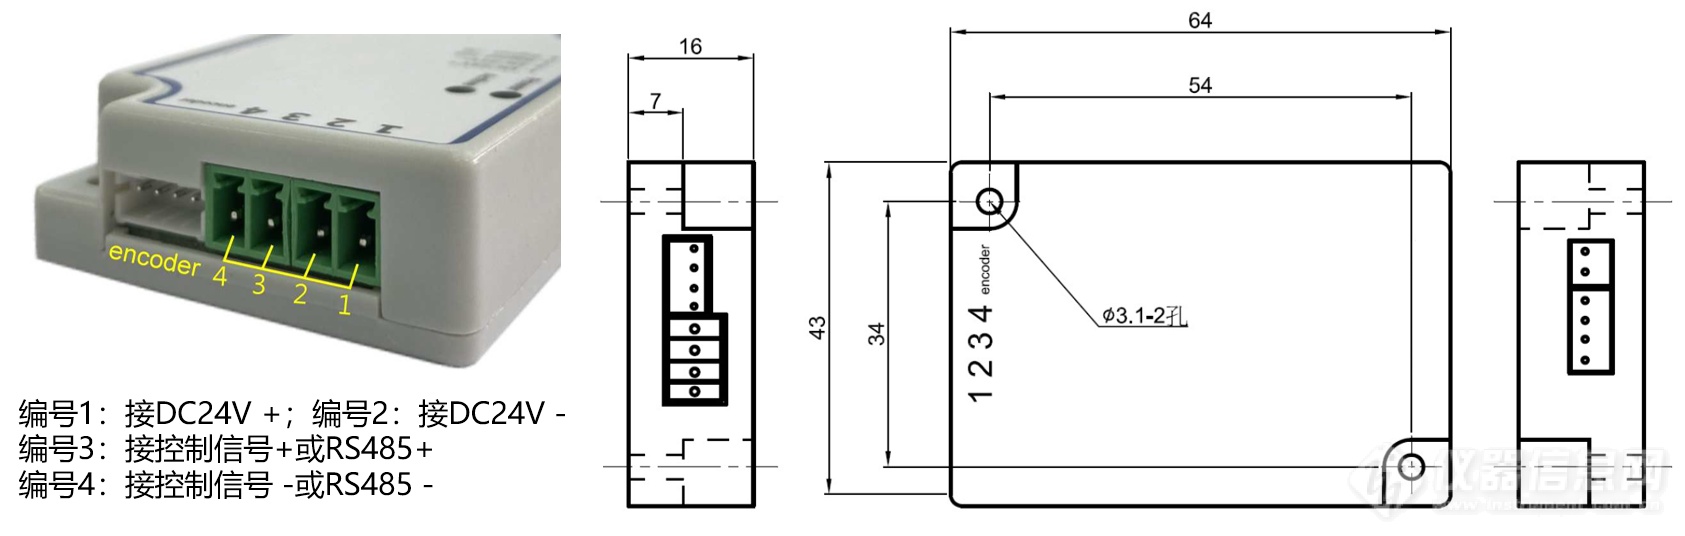 4.驱动电路模块及其尺寸图.png